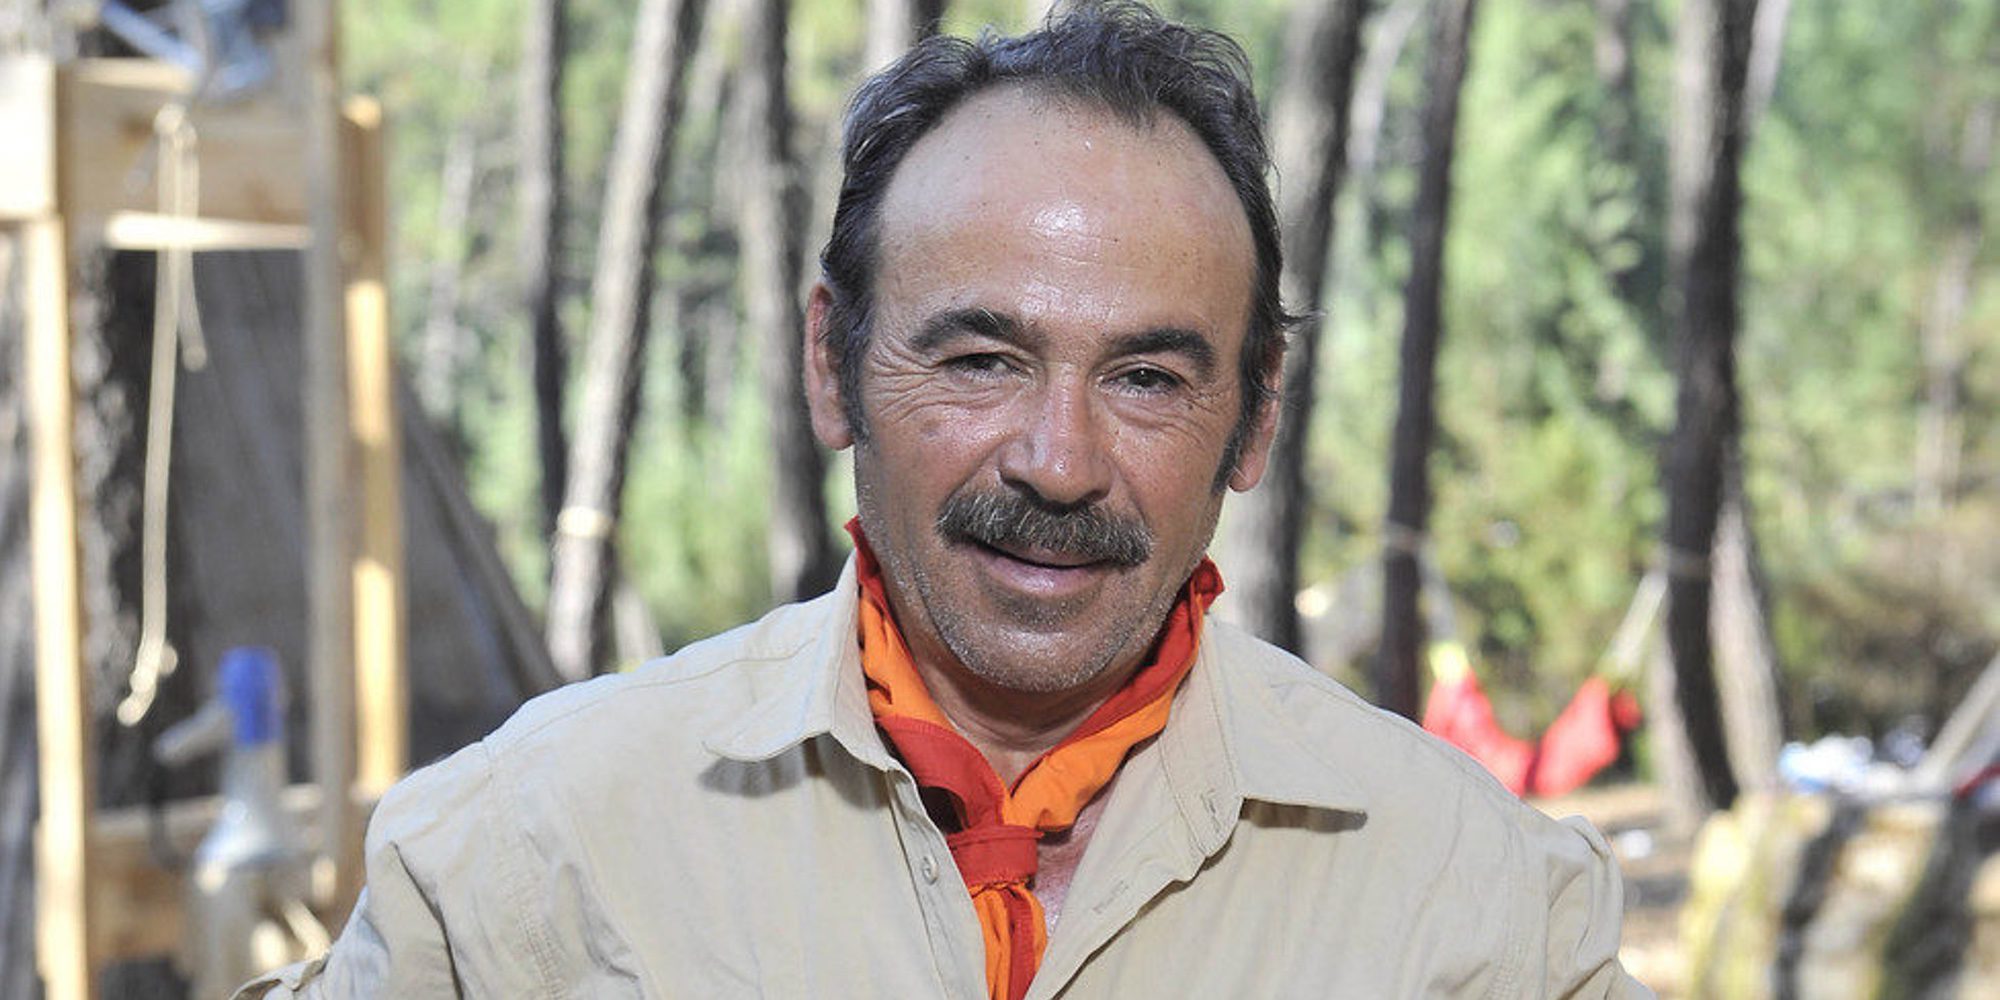 Muere Modesto Rodríguez, padre de Desiré de 'GH 14' y concursante de 'Campamento de verano'